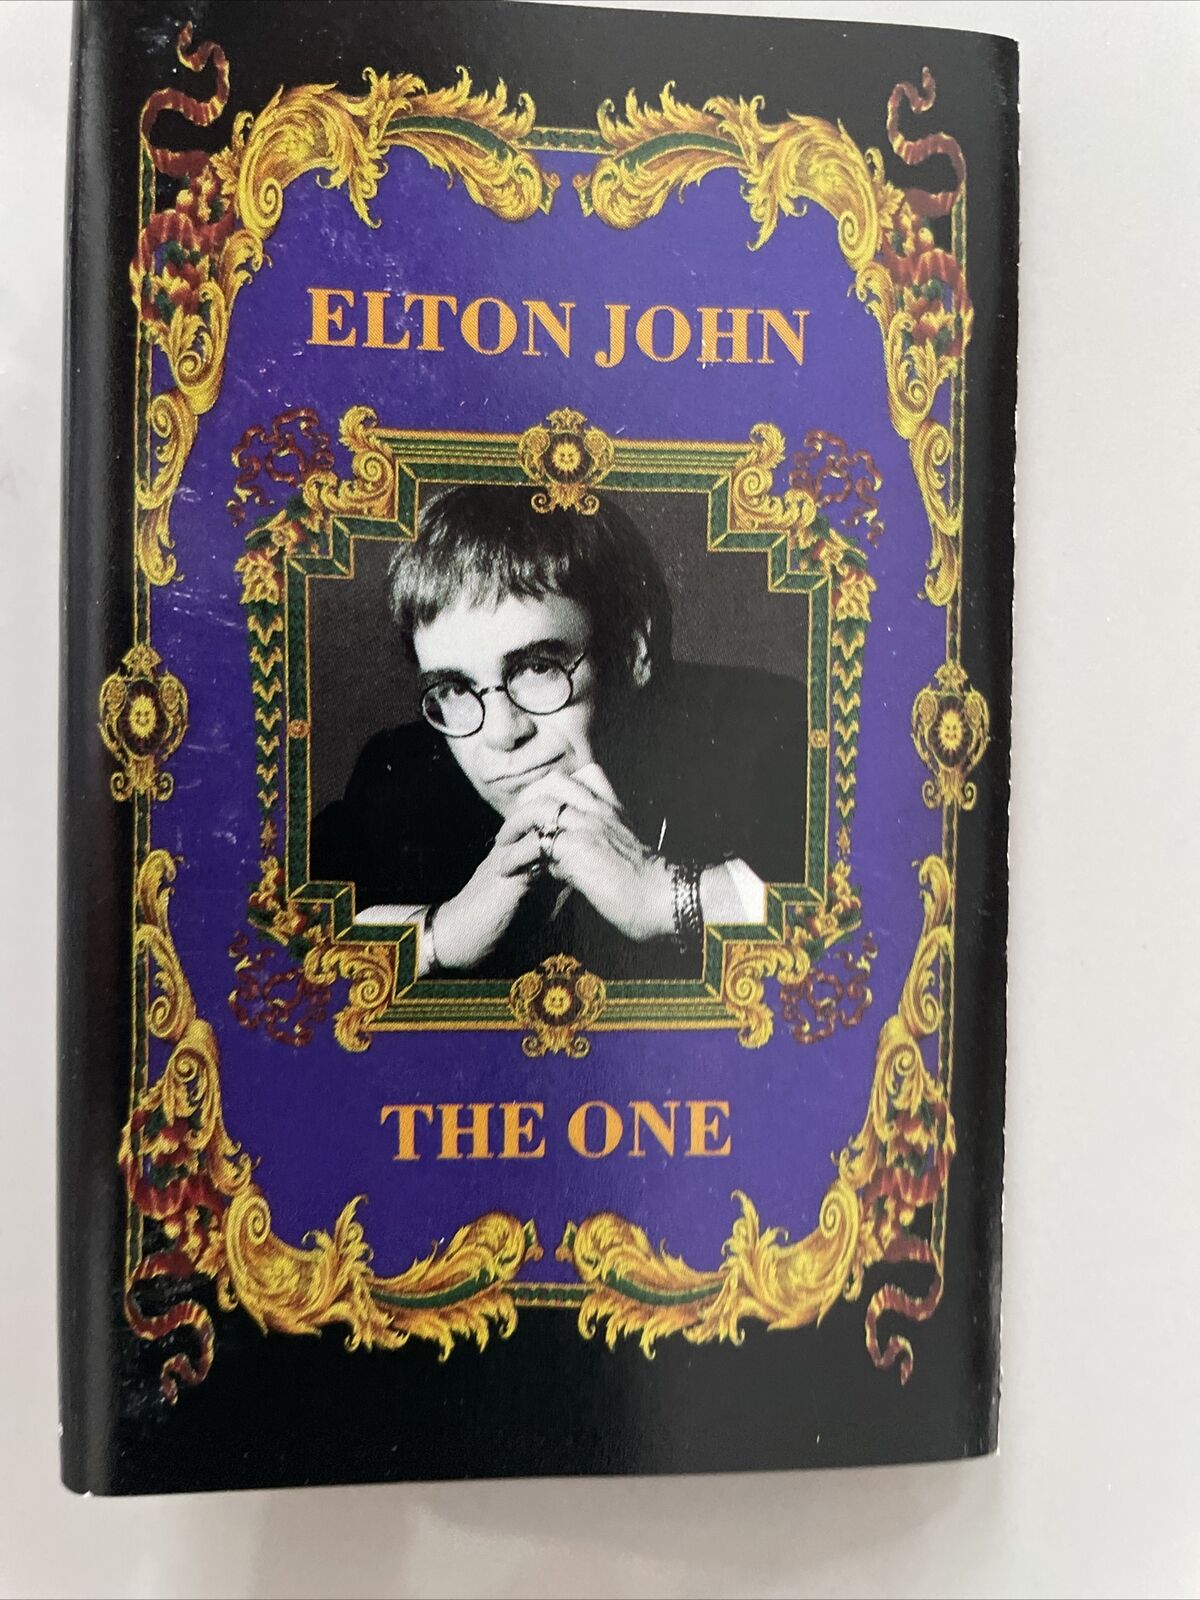 Elton John, The One Cassette Tape 1992